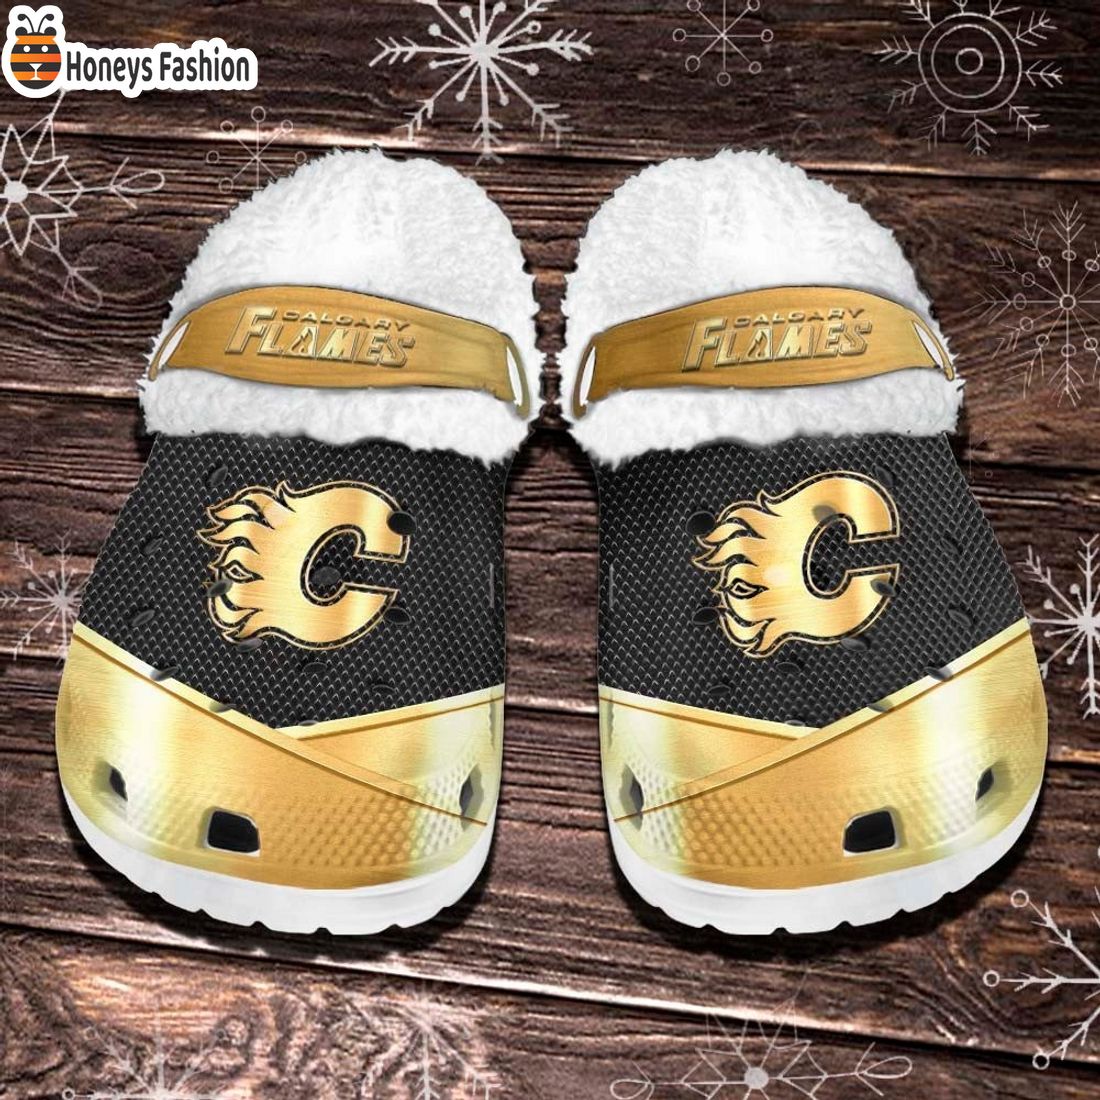 Calgary Flames NHL Fleece Crocs Clogs Shoes